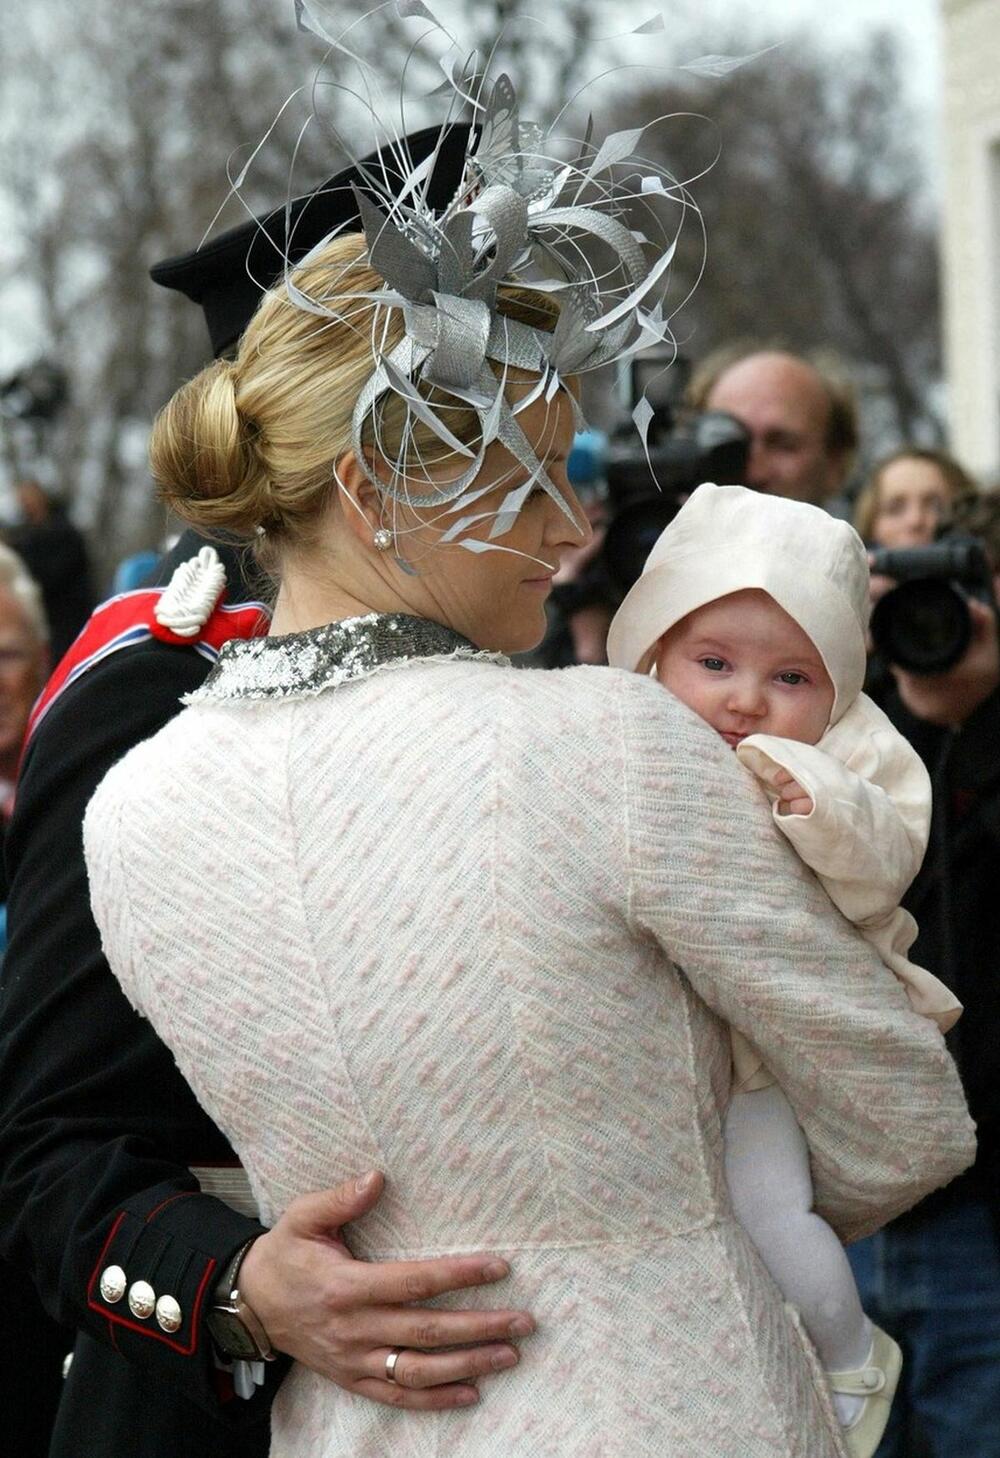 Princeza Ingrid Aleksandra, buduća kraljica Norveške, na svom krštenju 17. aprila 2004. godine